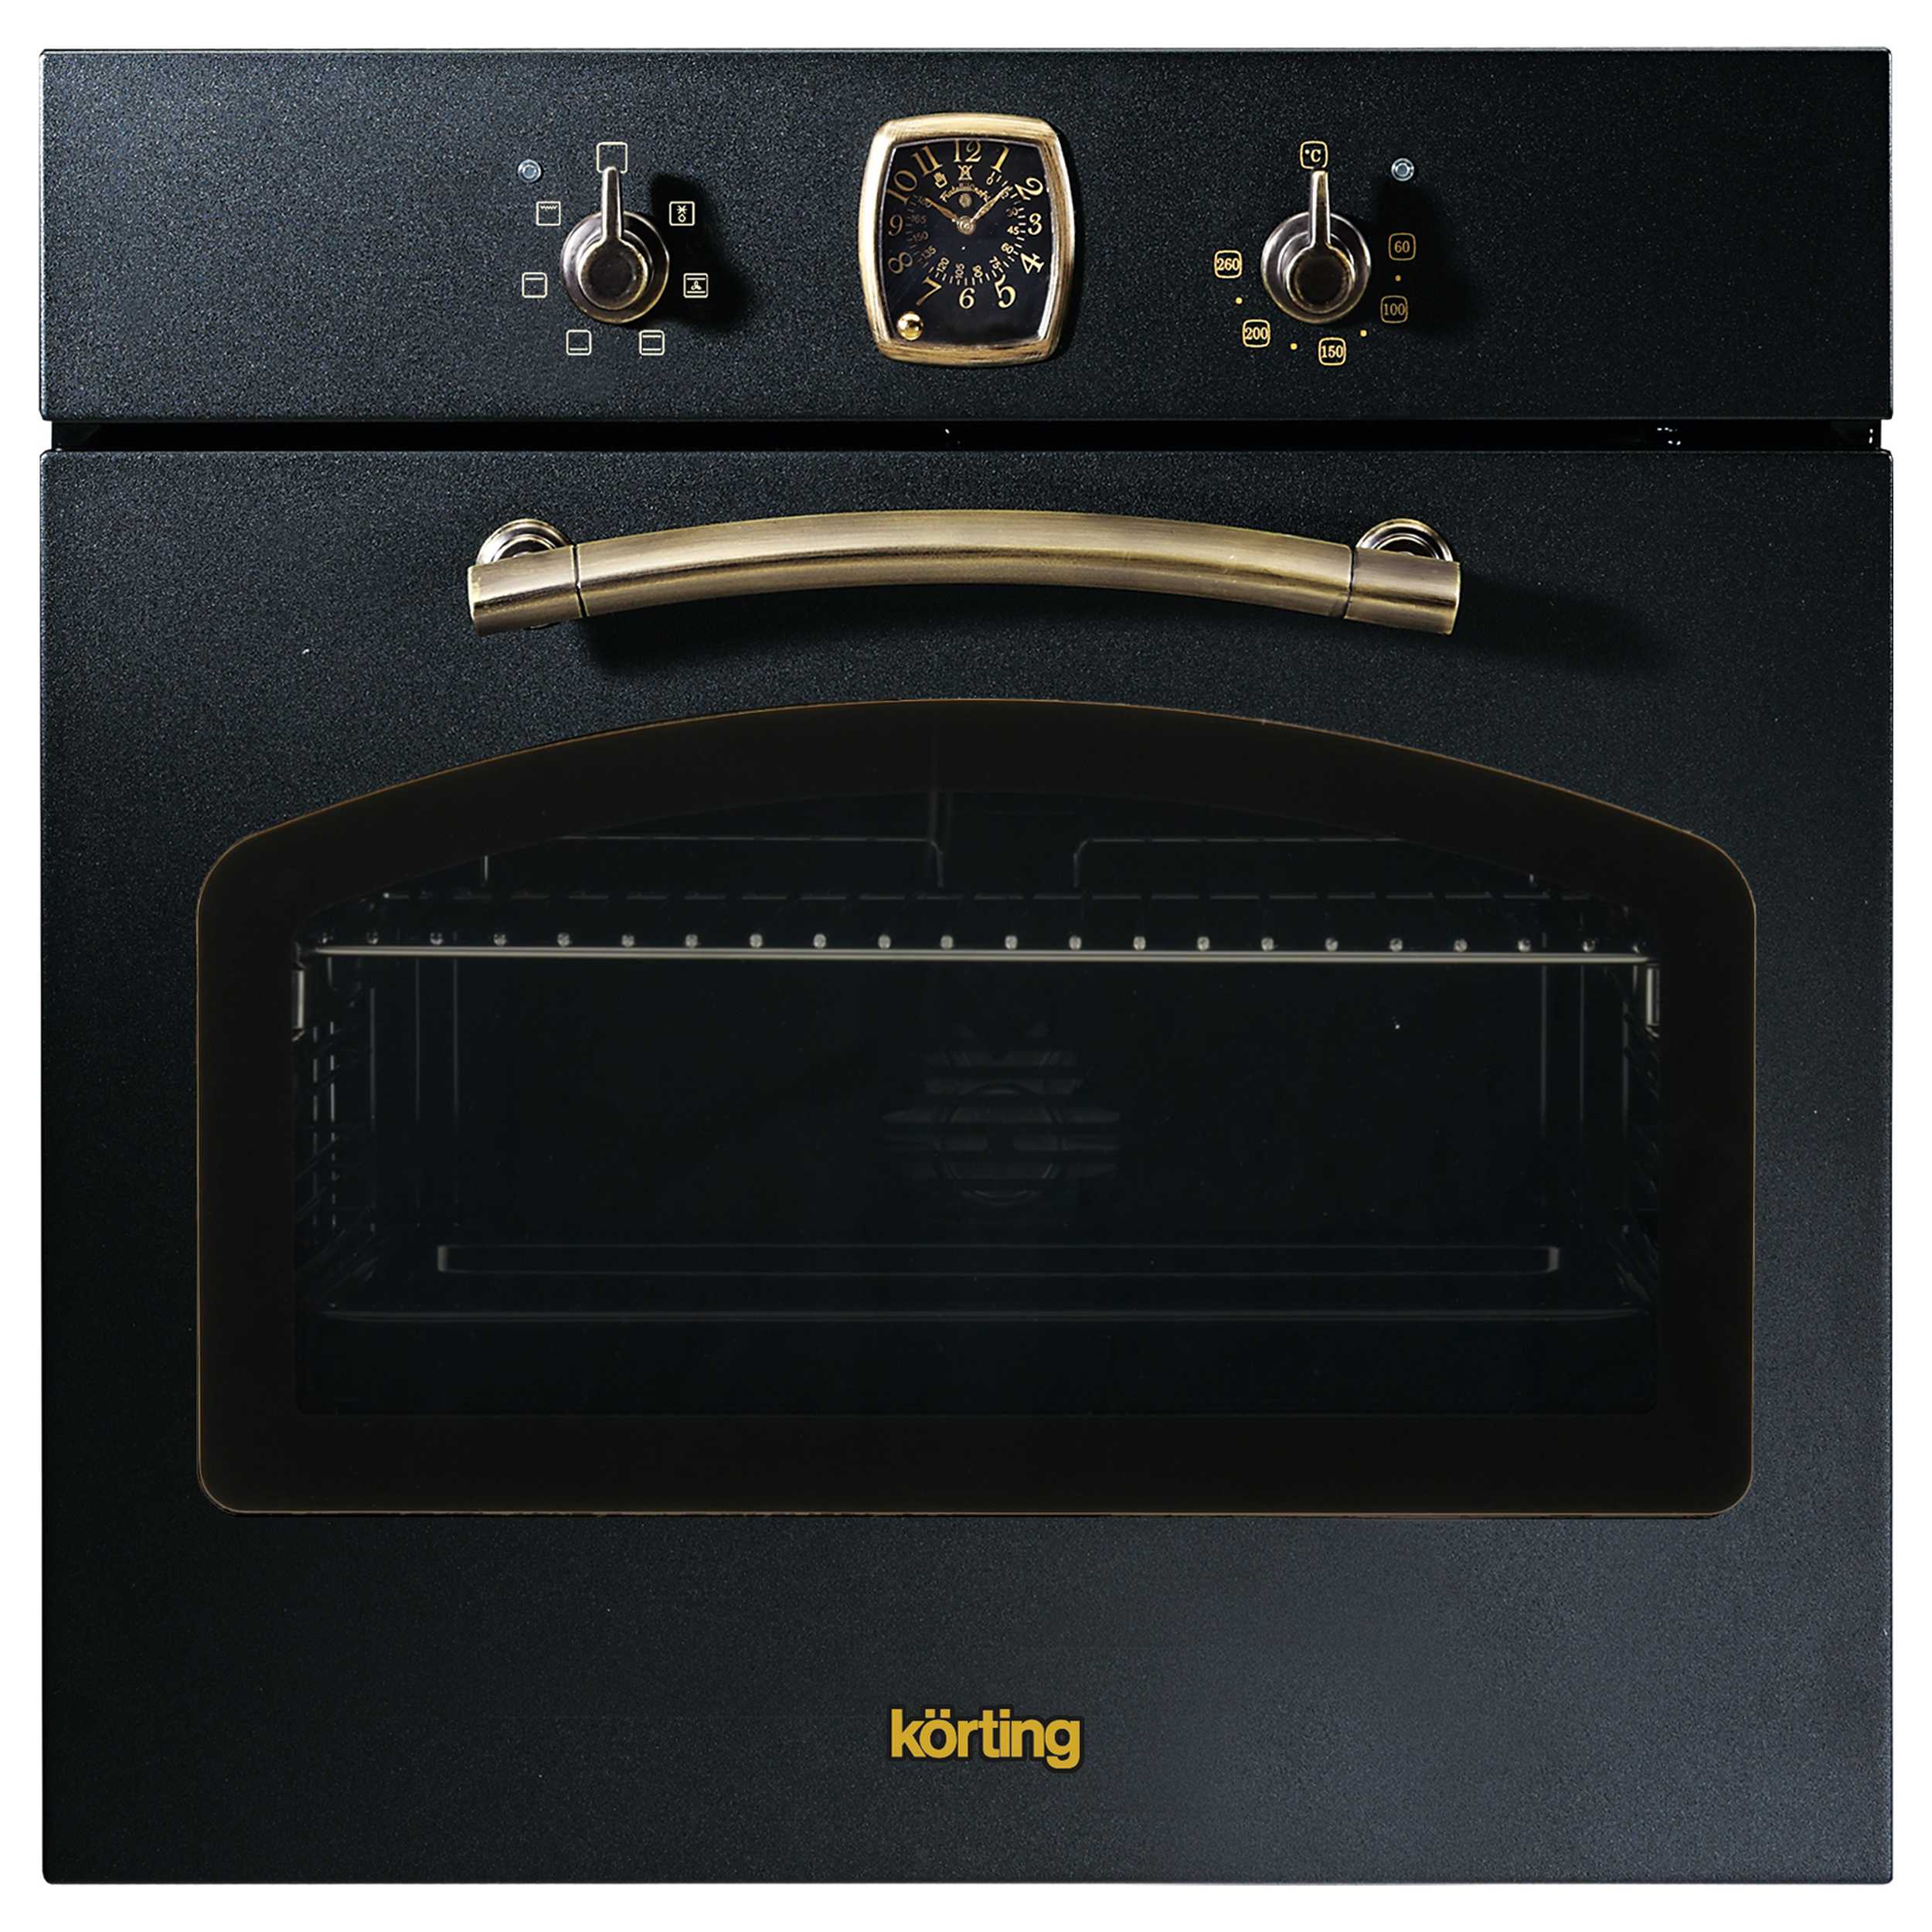 Встраиваемый электрический духовой шкаф Korting OKB 460 RN черный, золотистый смарт часы dt no1 золотистый